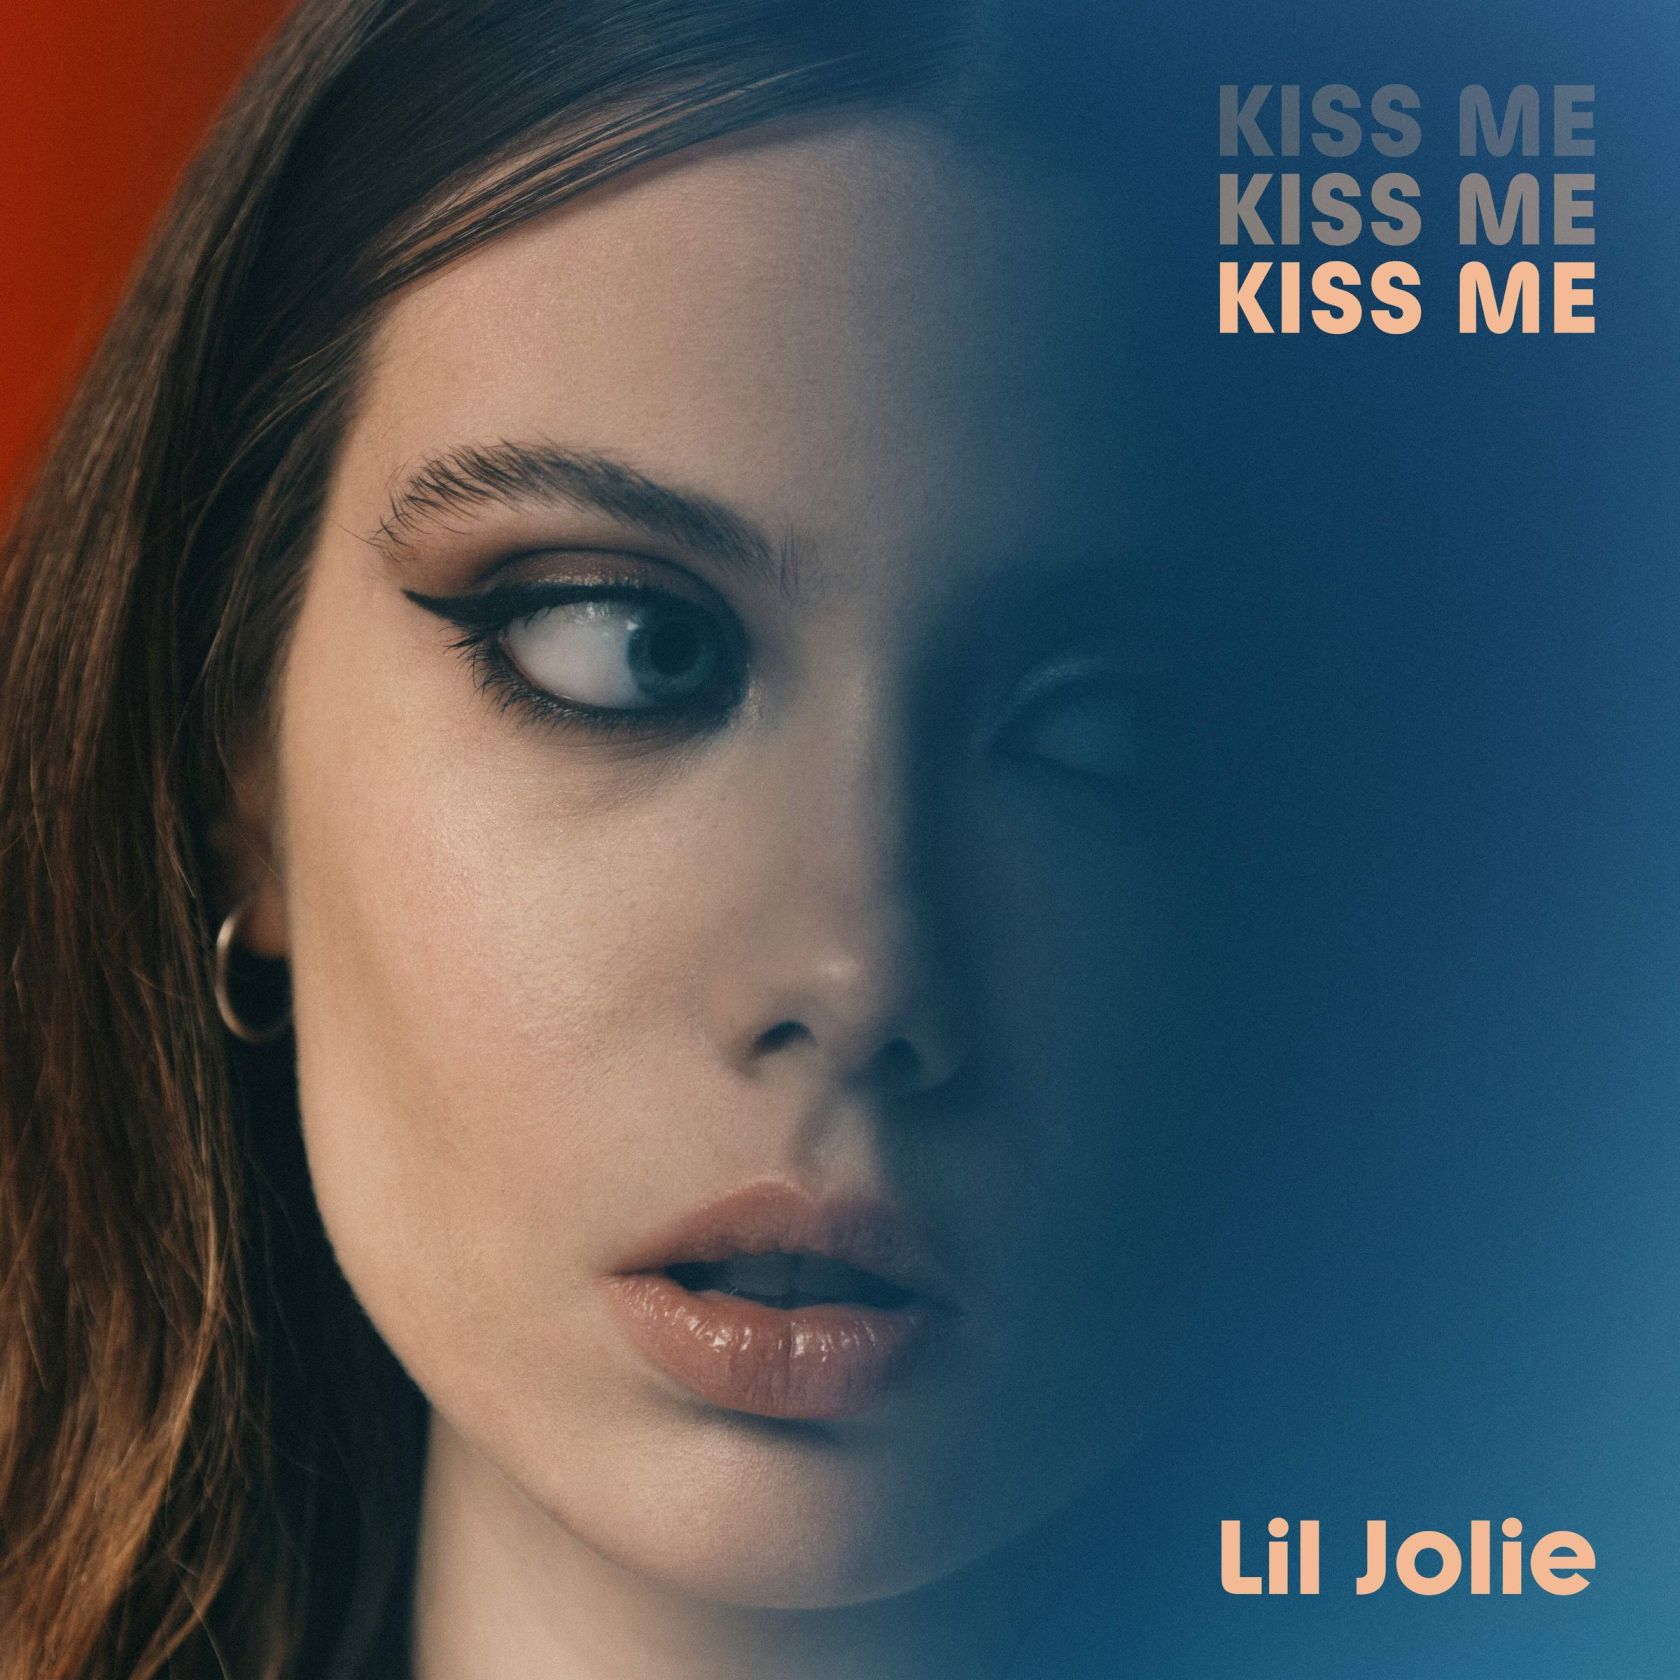 Fuori oggi in digitale “Kiss me”, il nuovo singolo di Lil Jolie, cantautrice tra i protagonisti di Amici23